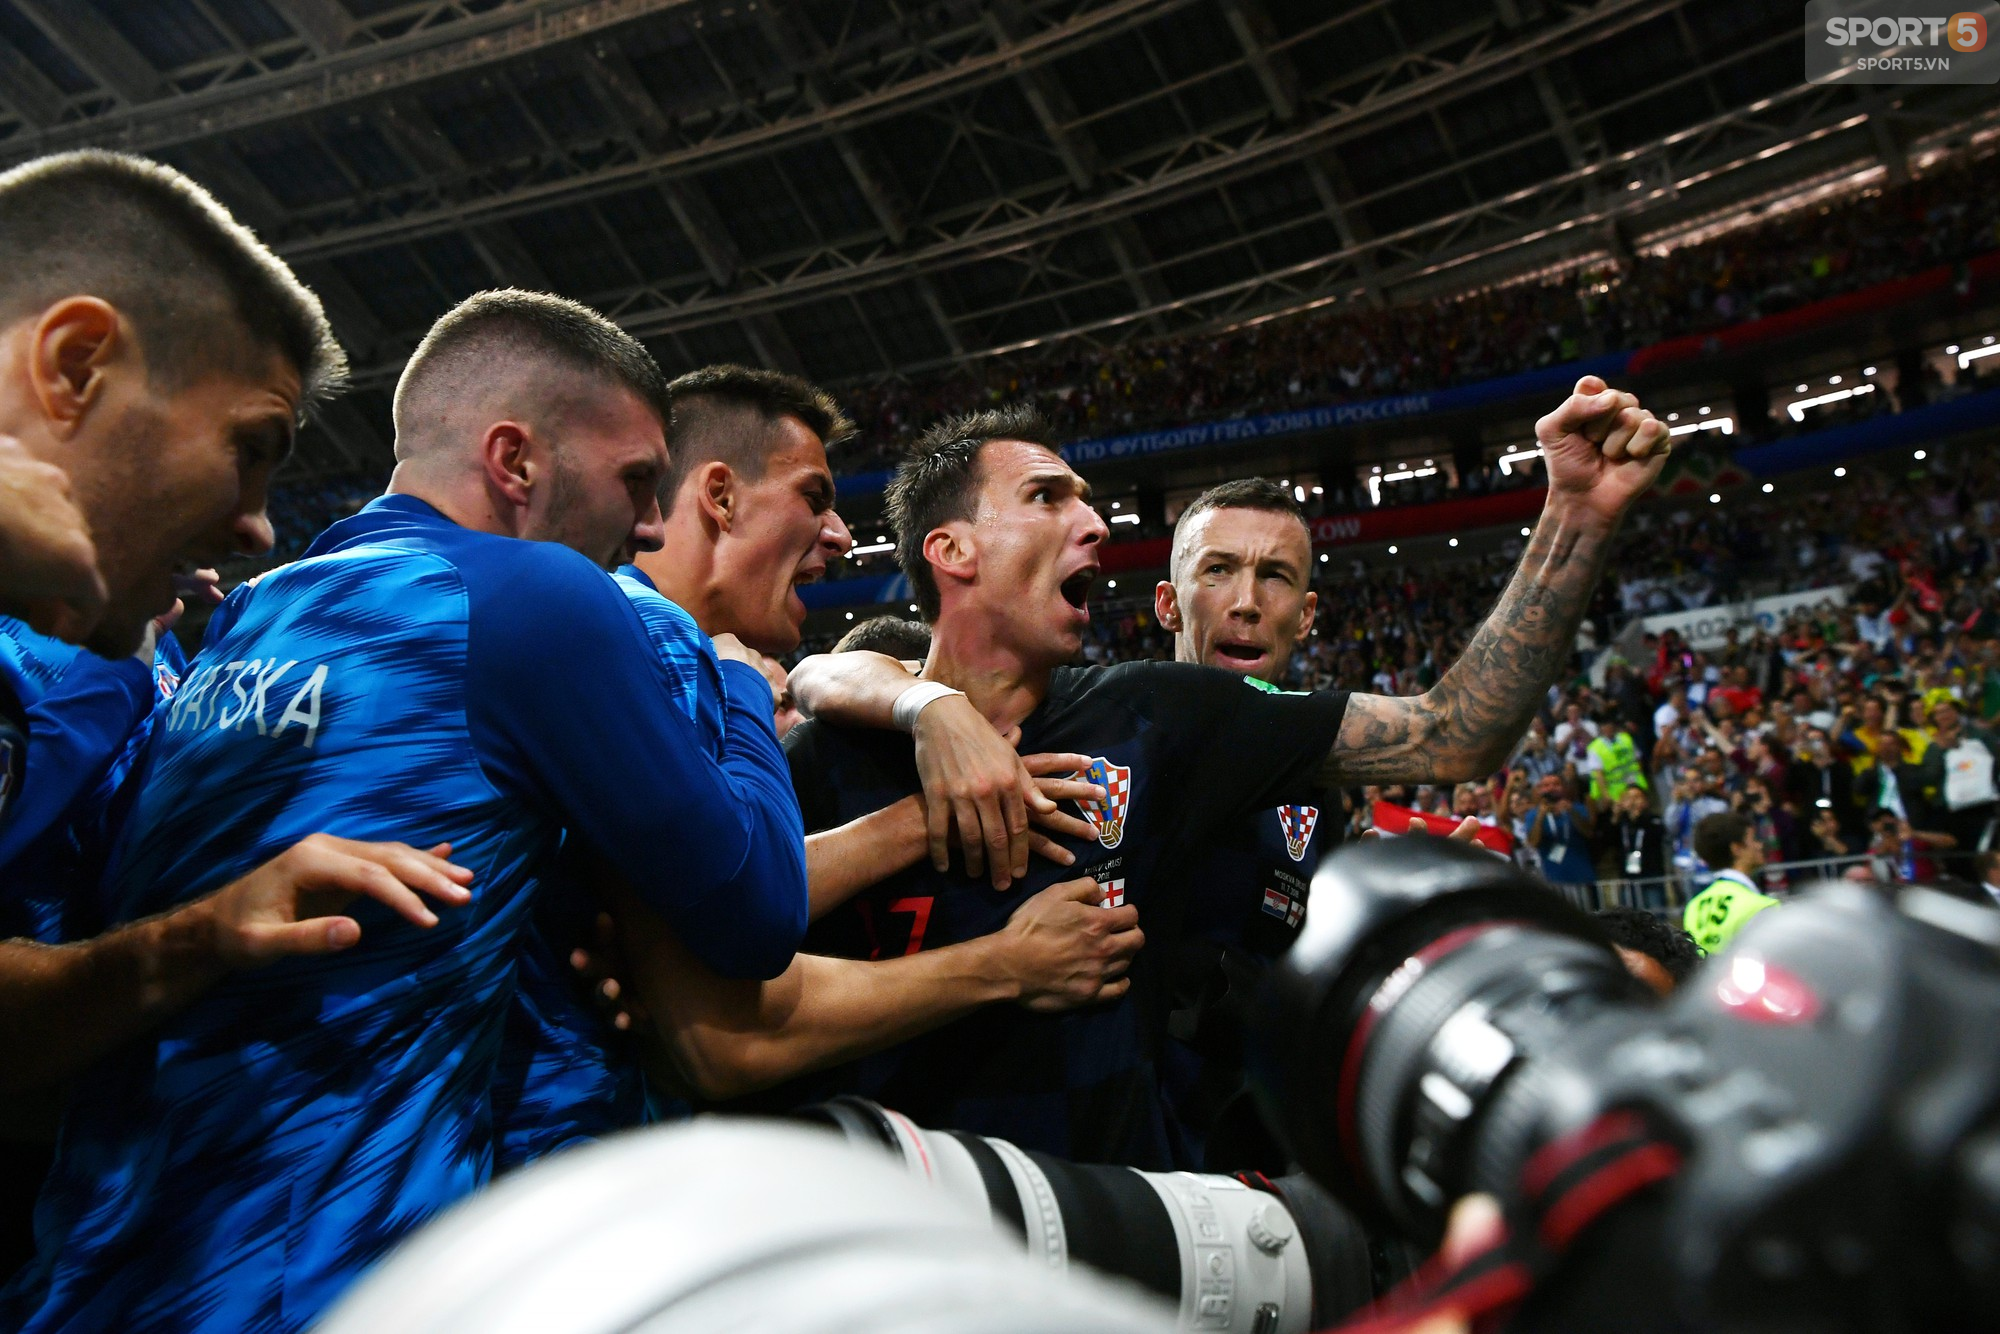 Croatia 2-1 Anh: Tam Sư hóa mèo, Mandzukic đưa đồng đội đến trận chung kết - Ảnh 2.